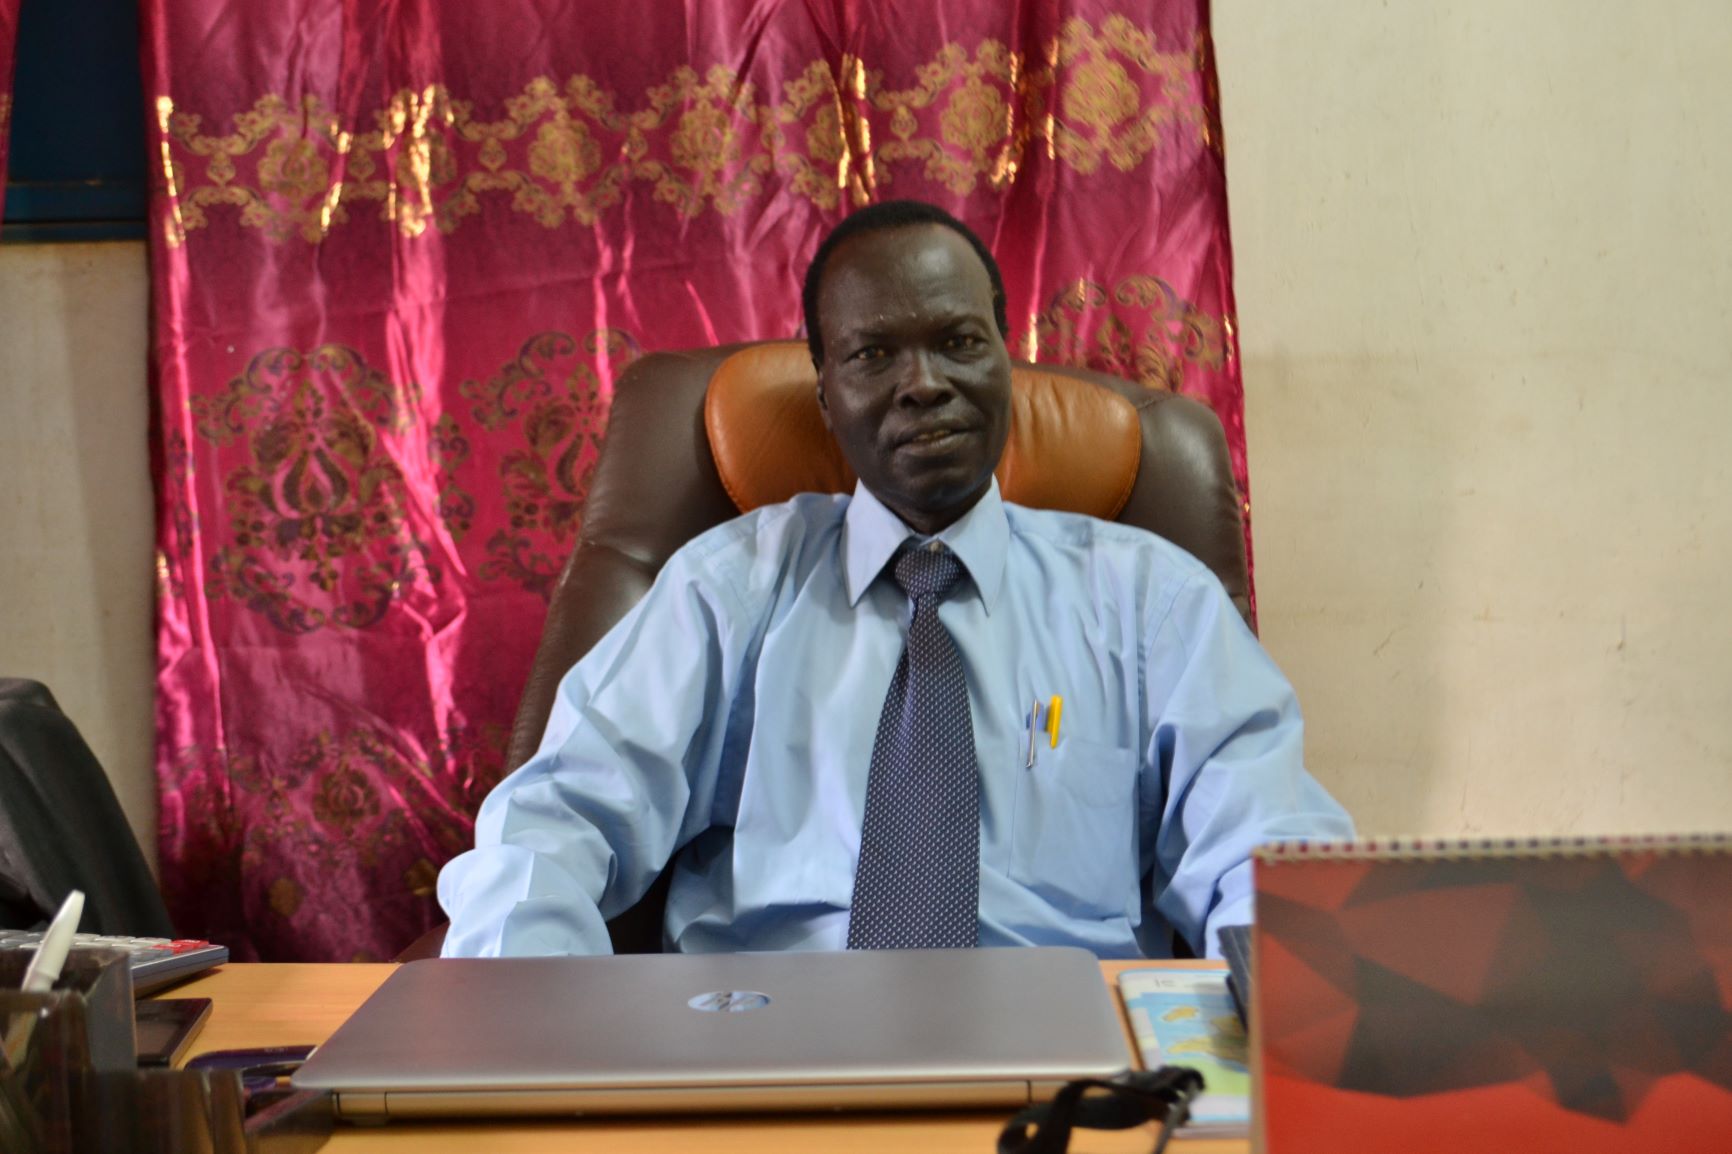 Rev. Santino at his desk at NTC in Juba.